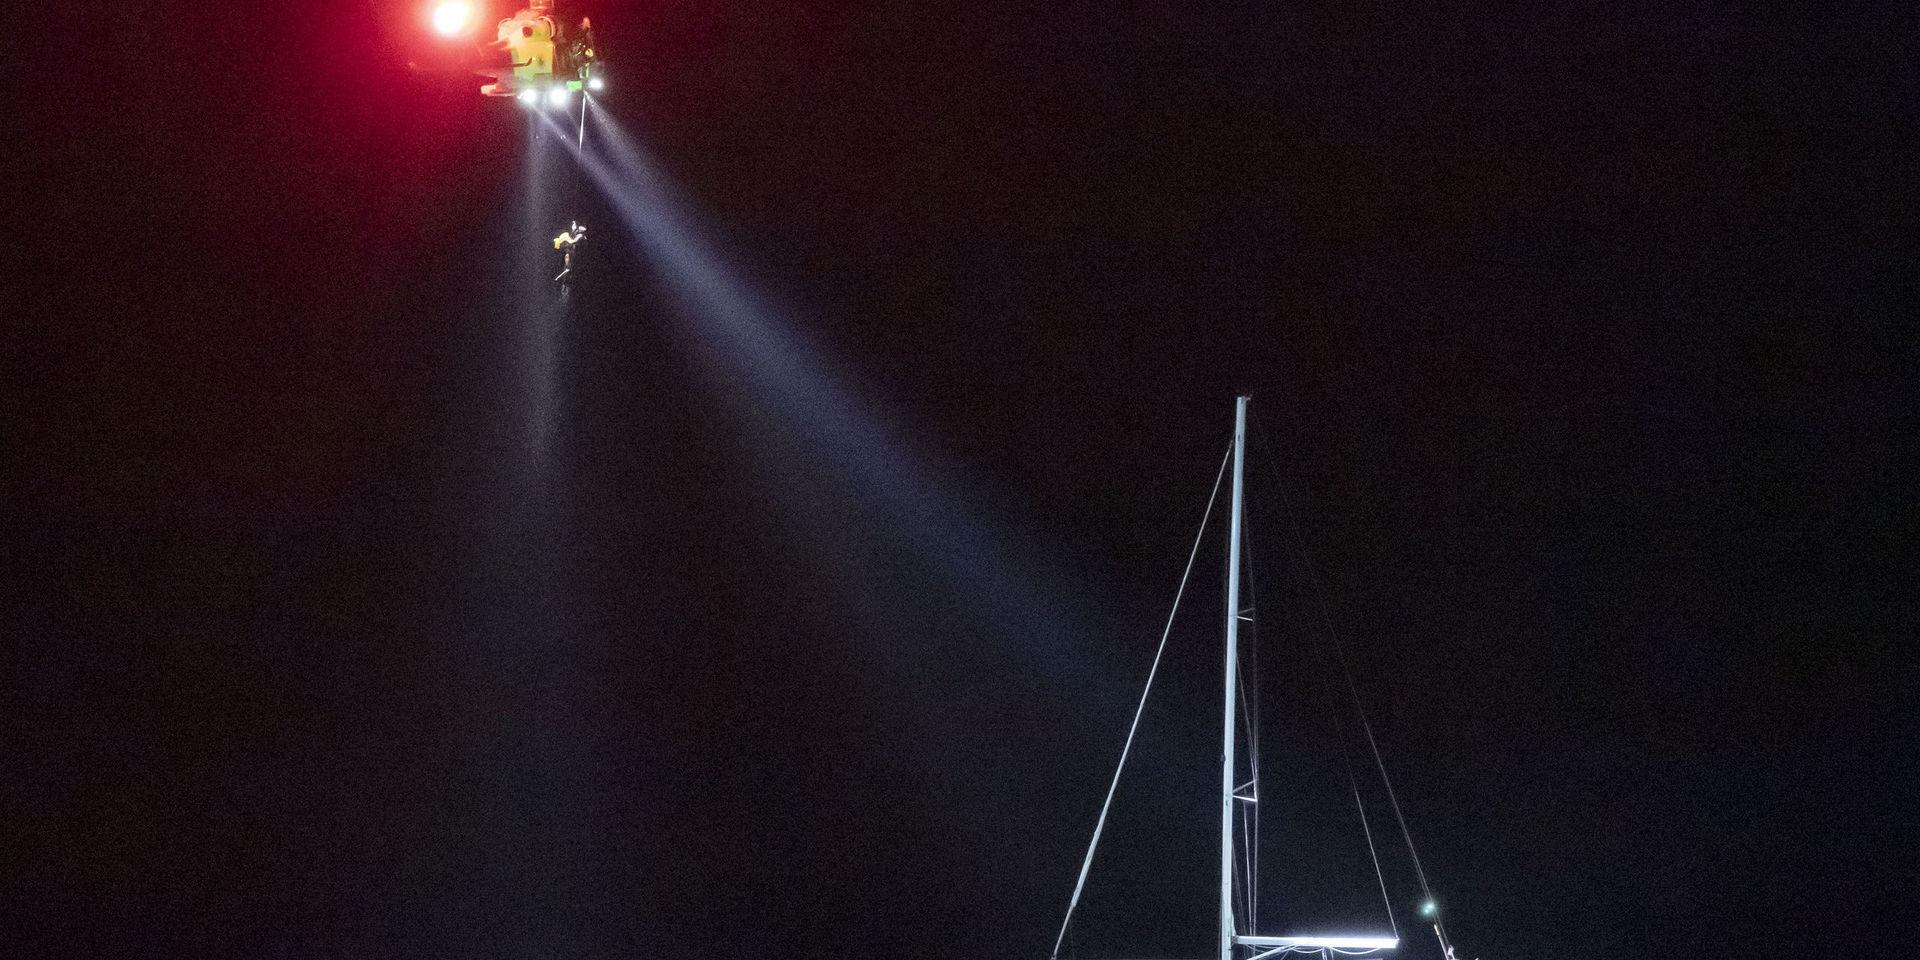 Sjöräddningens helikopter vinschar upp en person vid den grundstötta segelbåten vid Falsterbo fyr på tisdagskvällen.